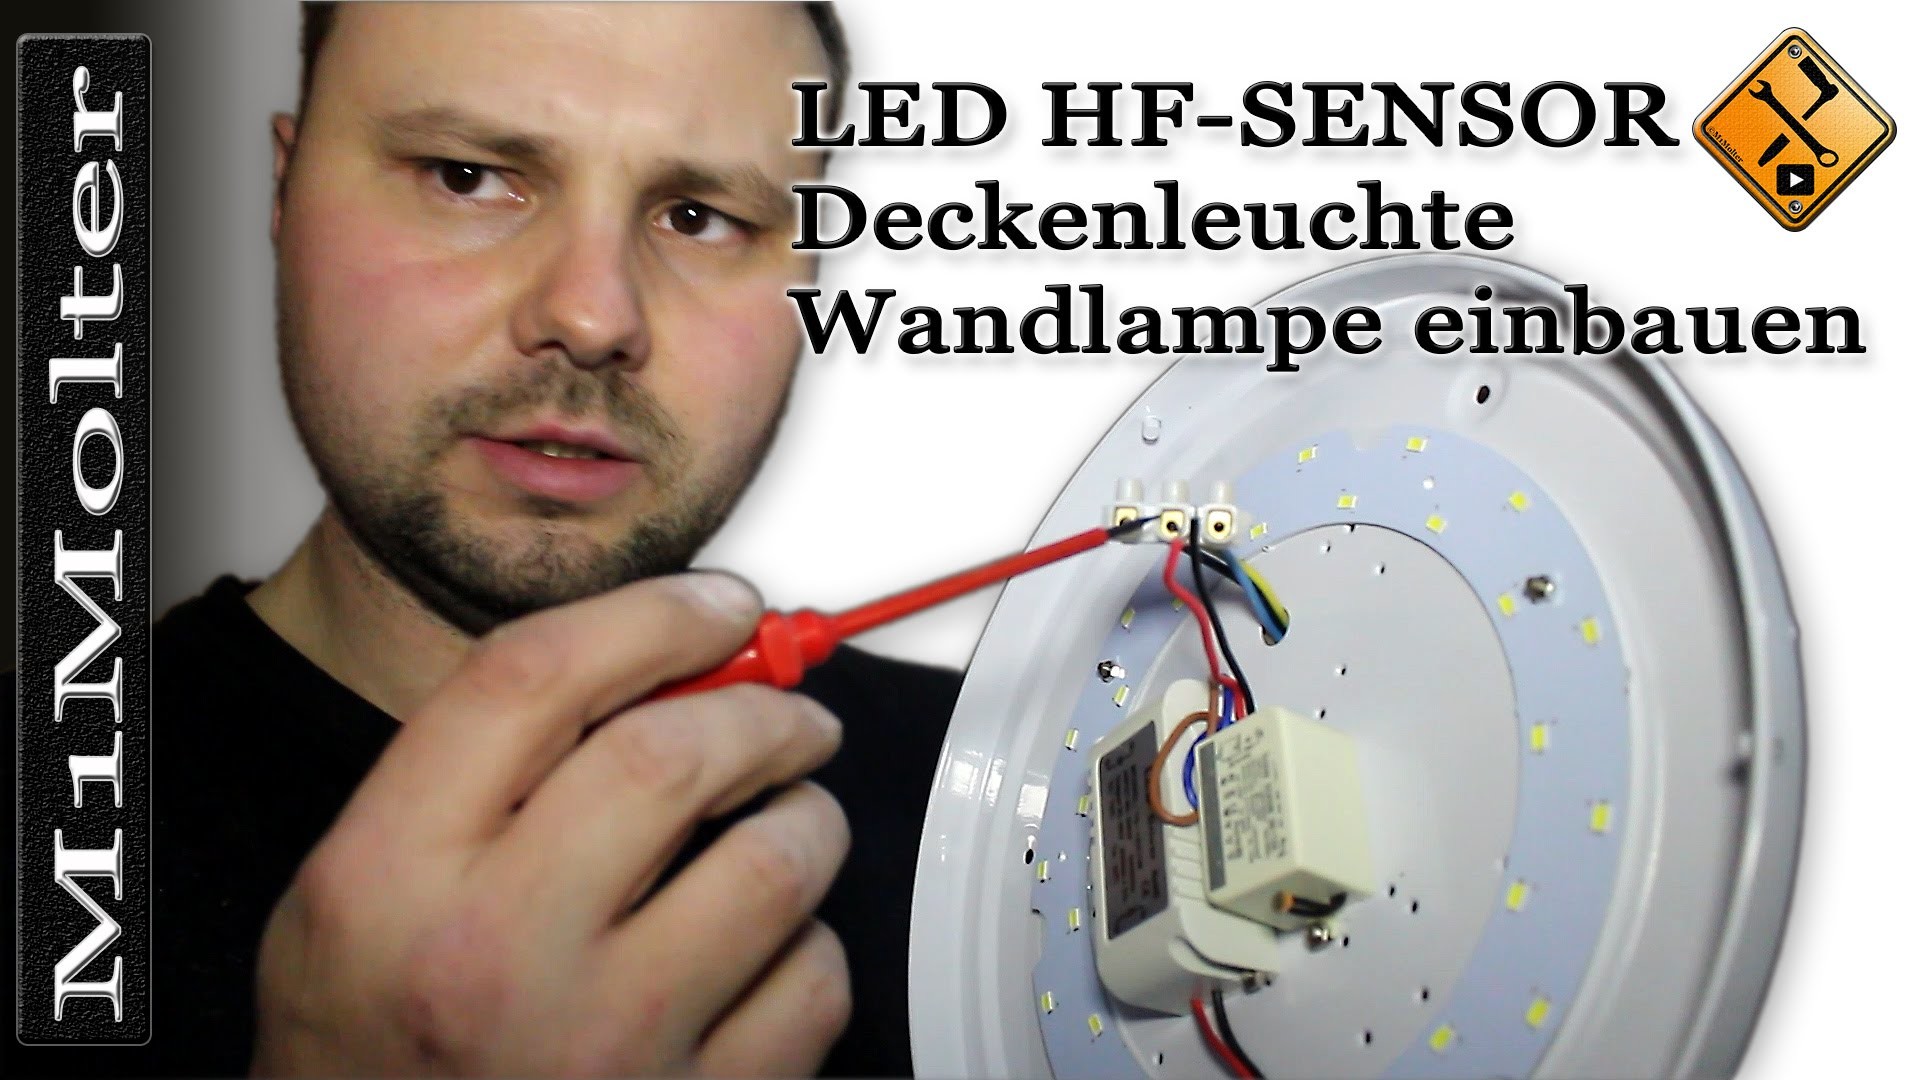 LED HF Sensor Deckenleuchte Wandlampe einbauen von M1Molter